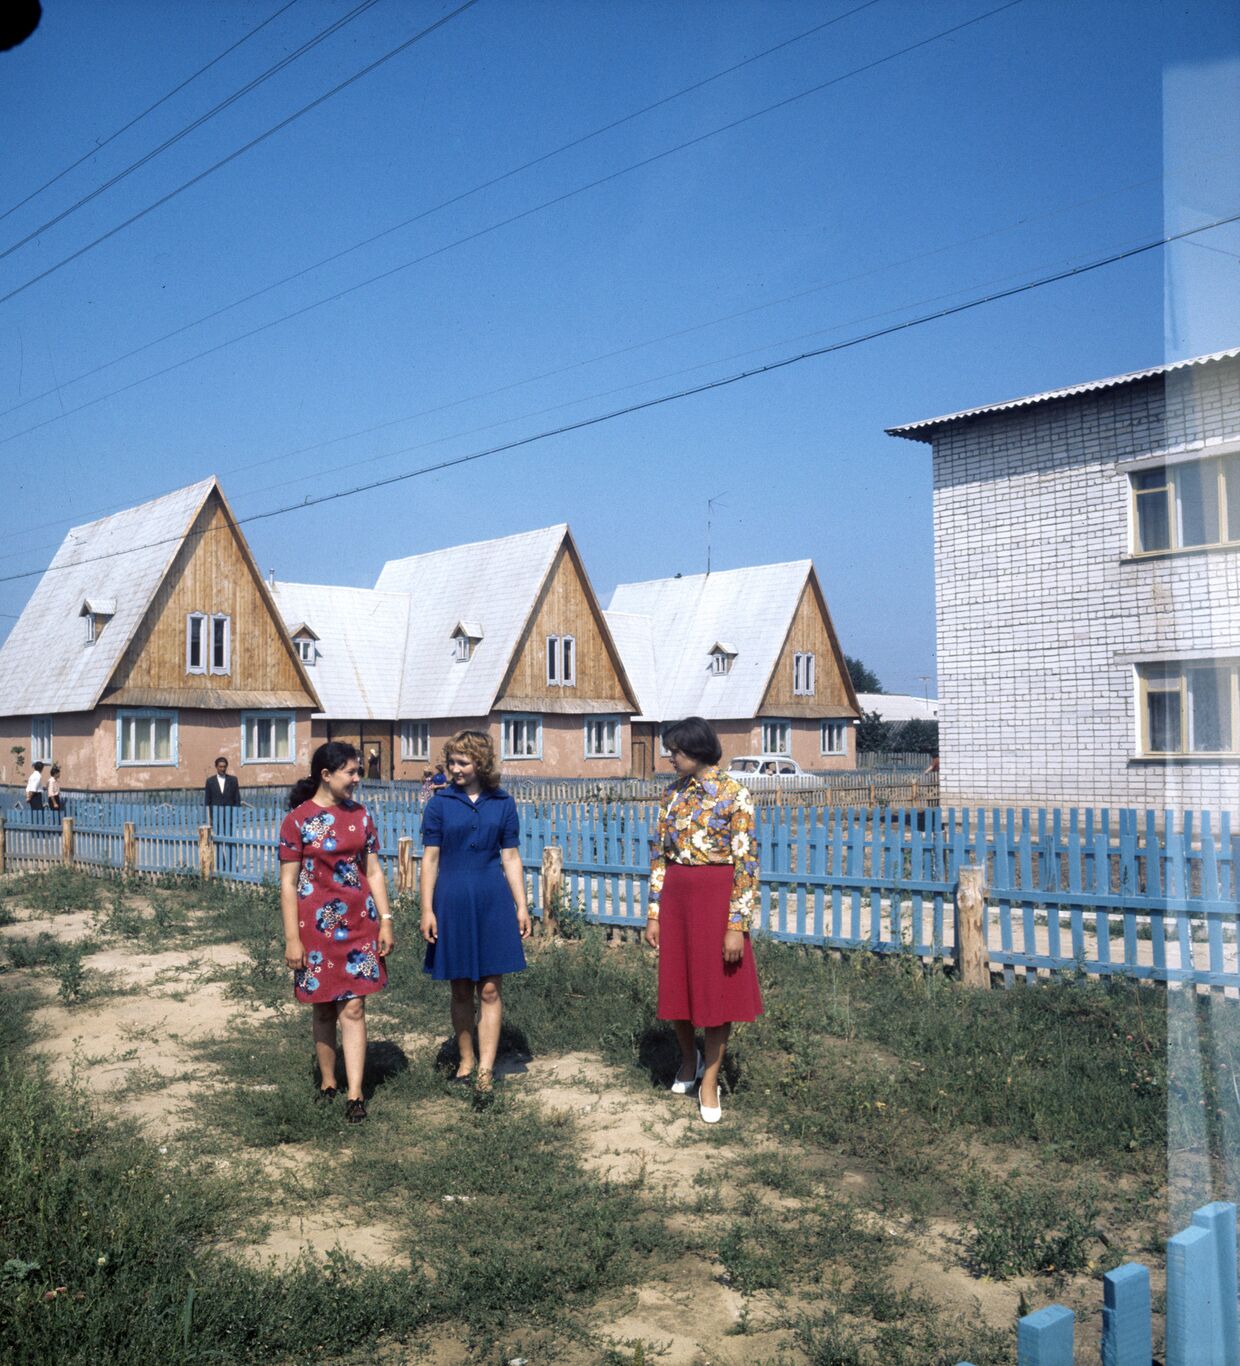 На улице экспериментального поселка колхоза «За коммунизм» (Волжский район). В поселке построены благоустроенные жилые дома, магазины, финские бани, гаражи для персональных машин